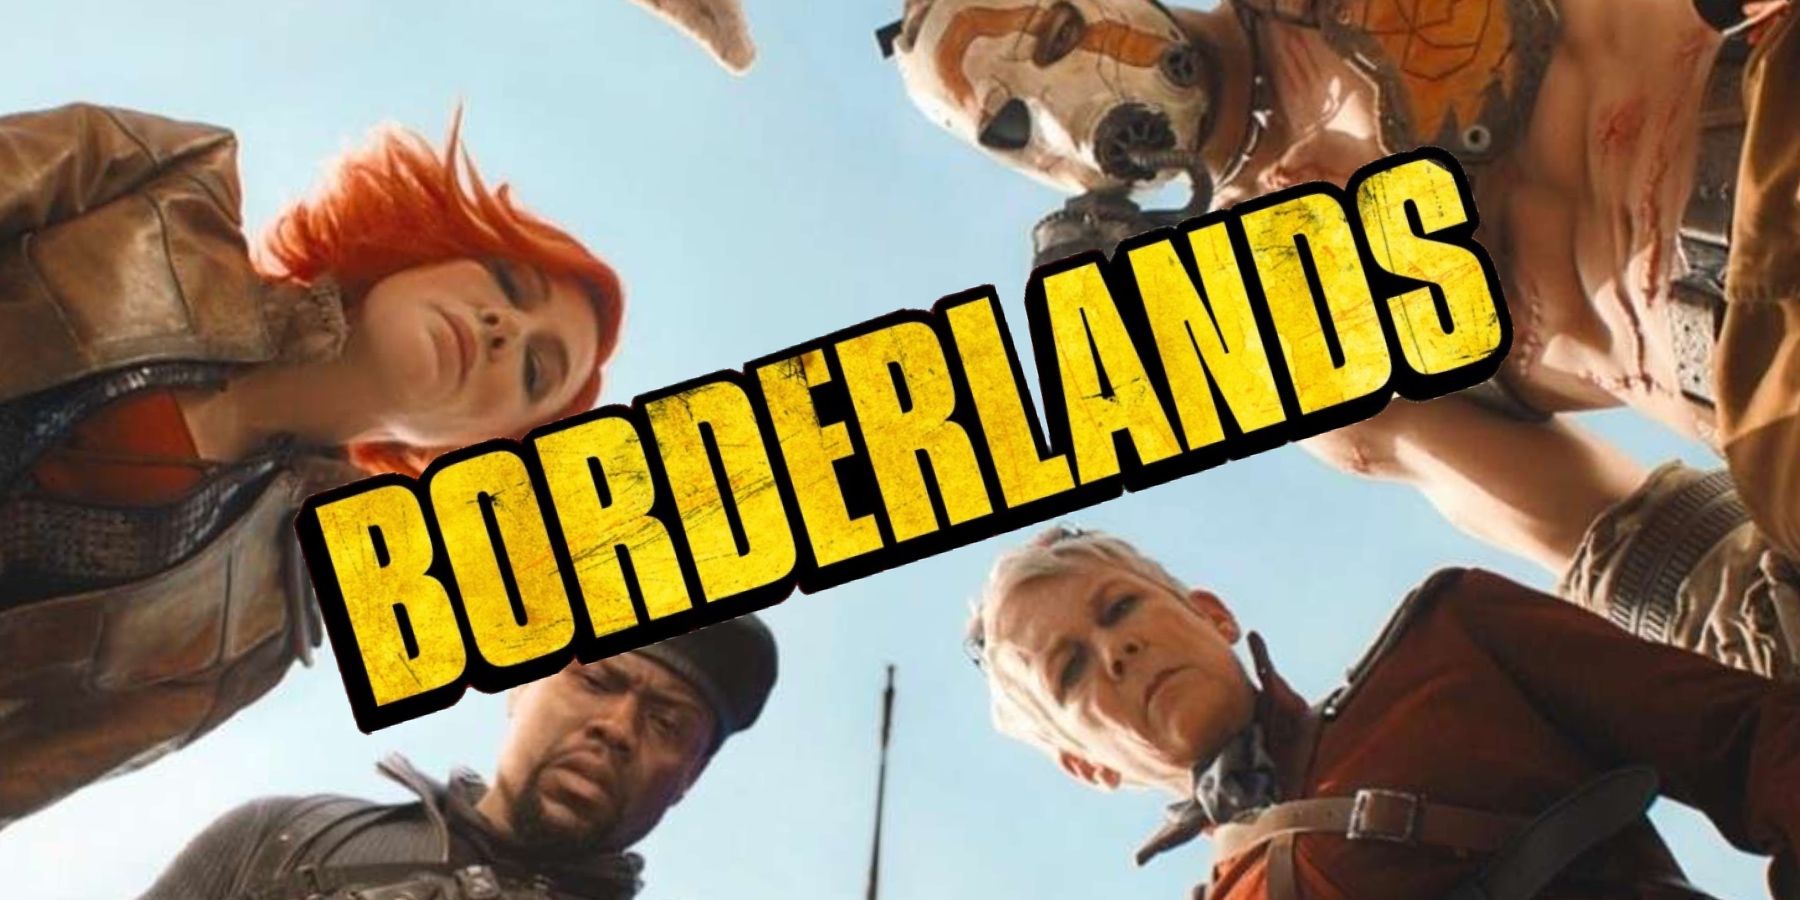 borderlands-movie-cast-trailer-still-logo